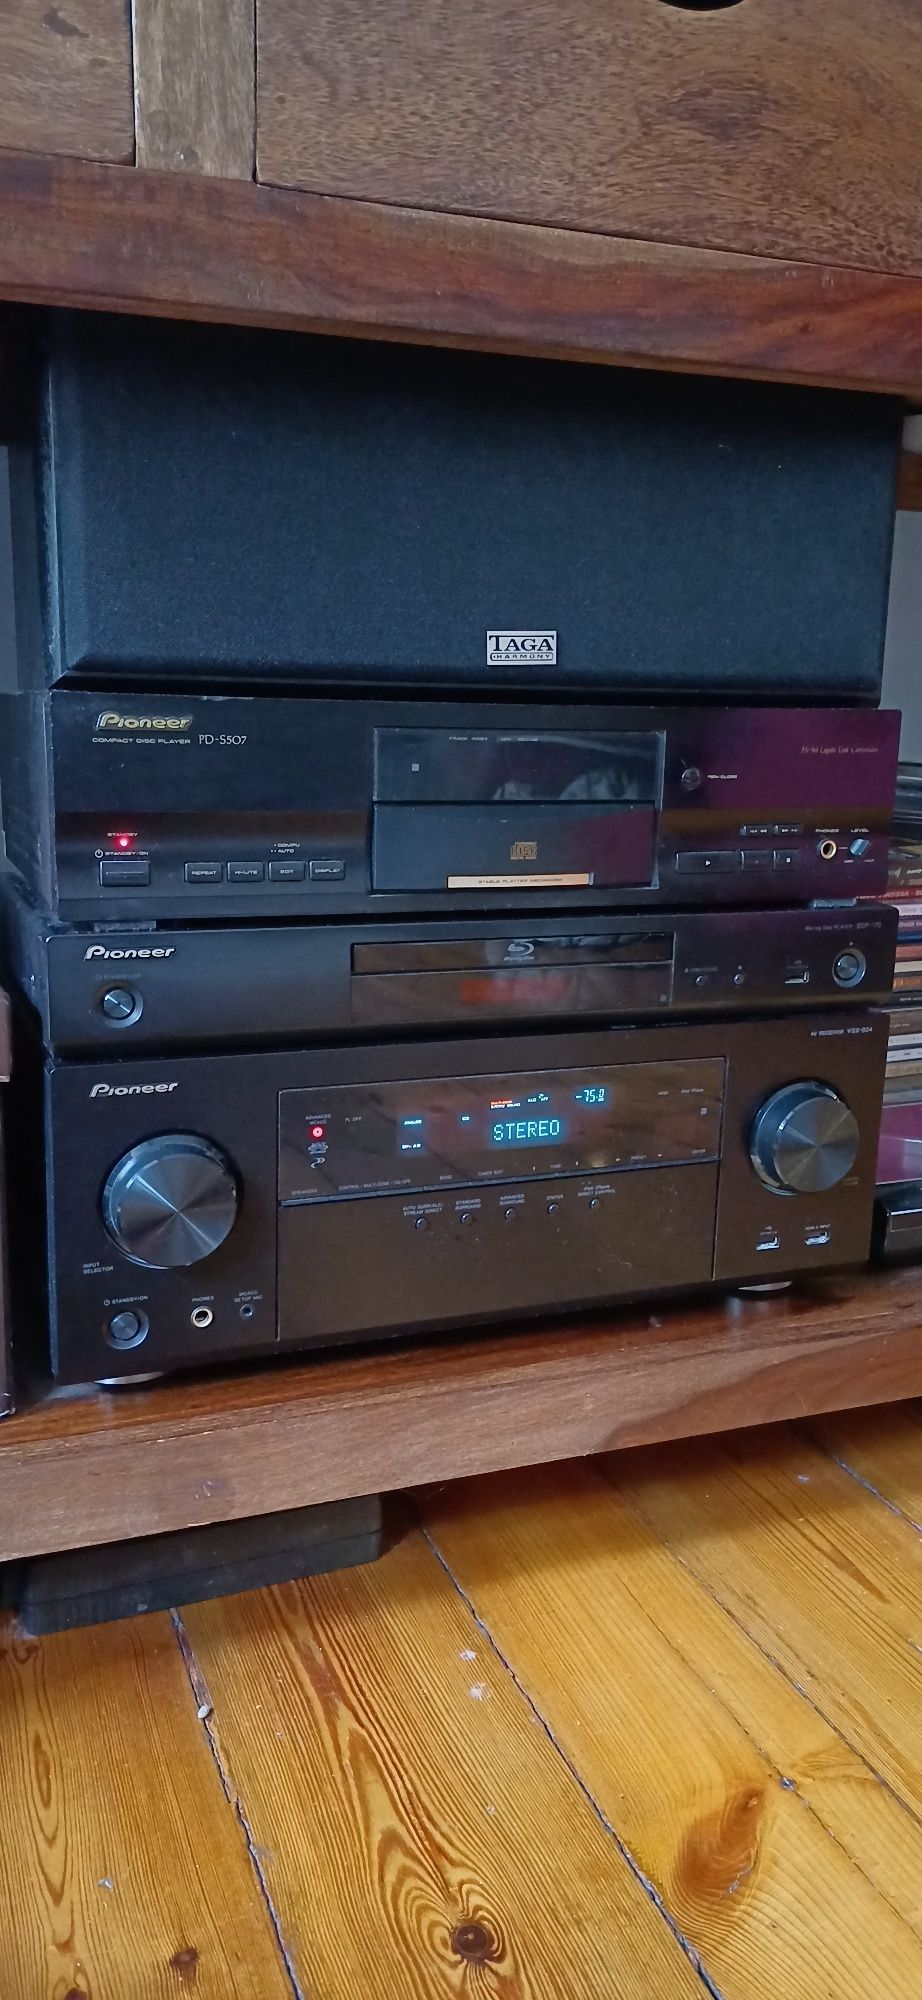 amplituner AV Pioneer VSX-924 kino domowe 7.2 czarny